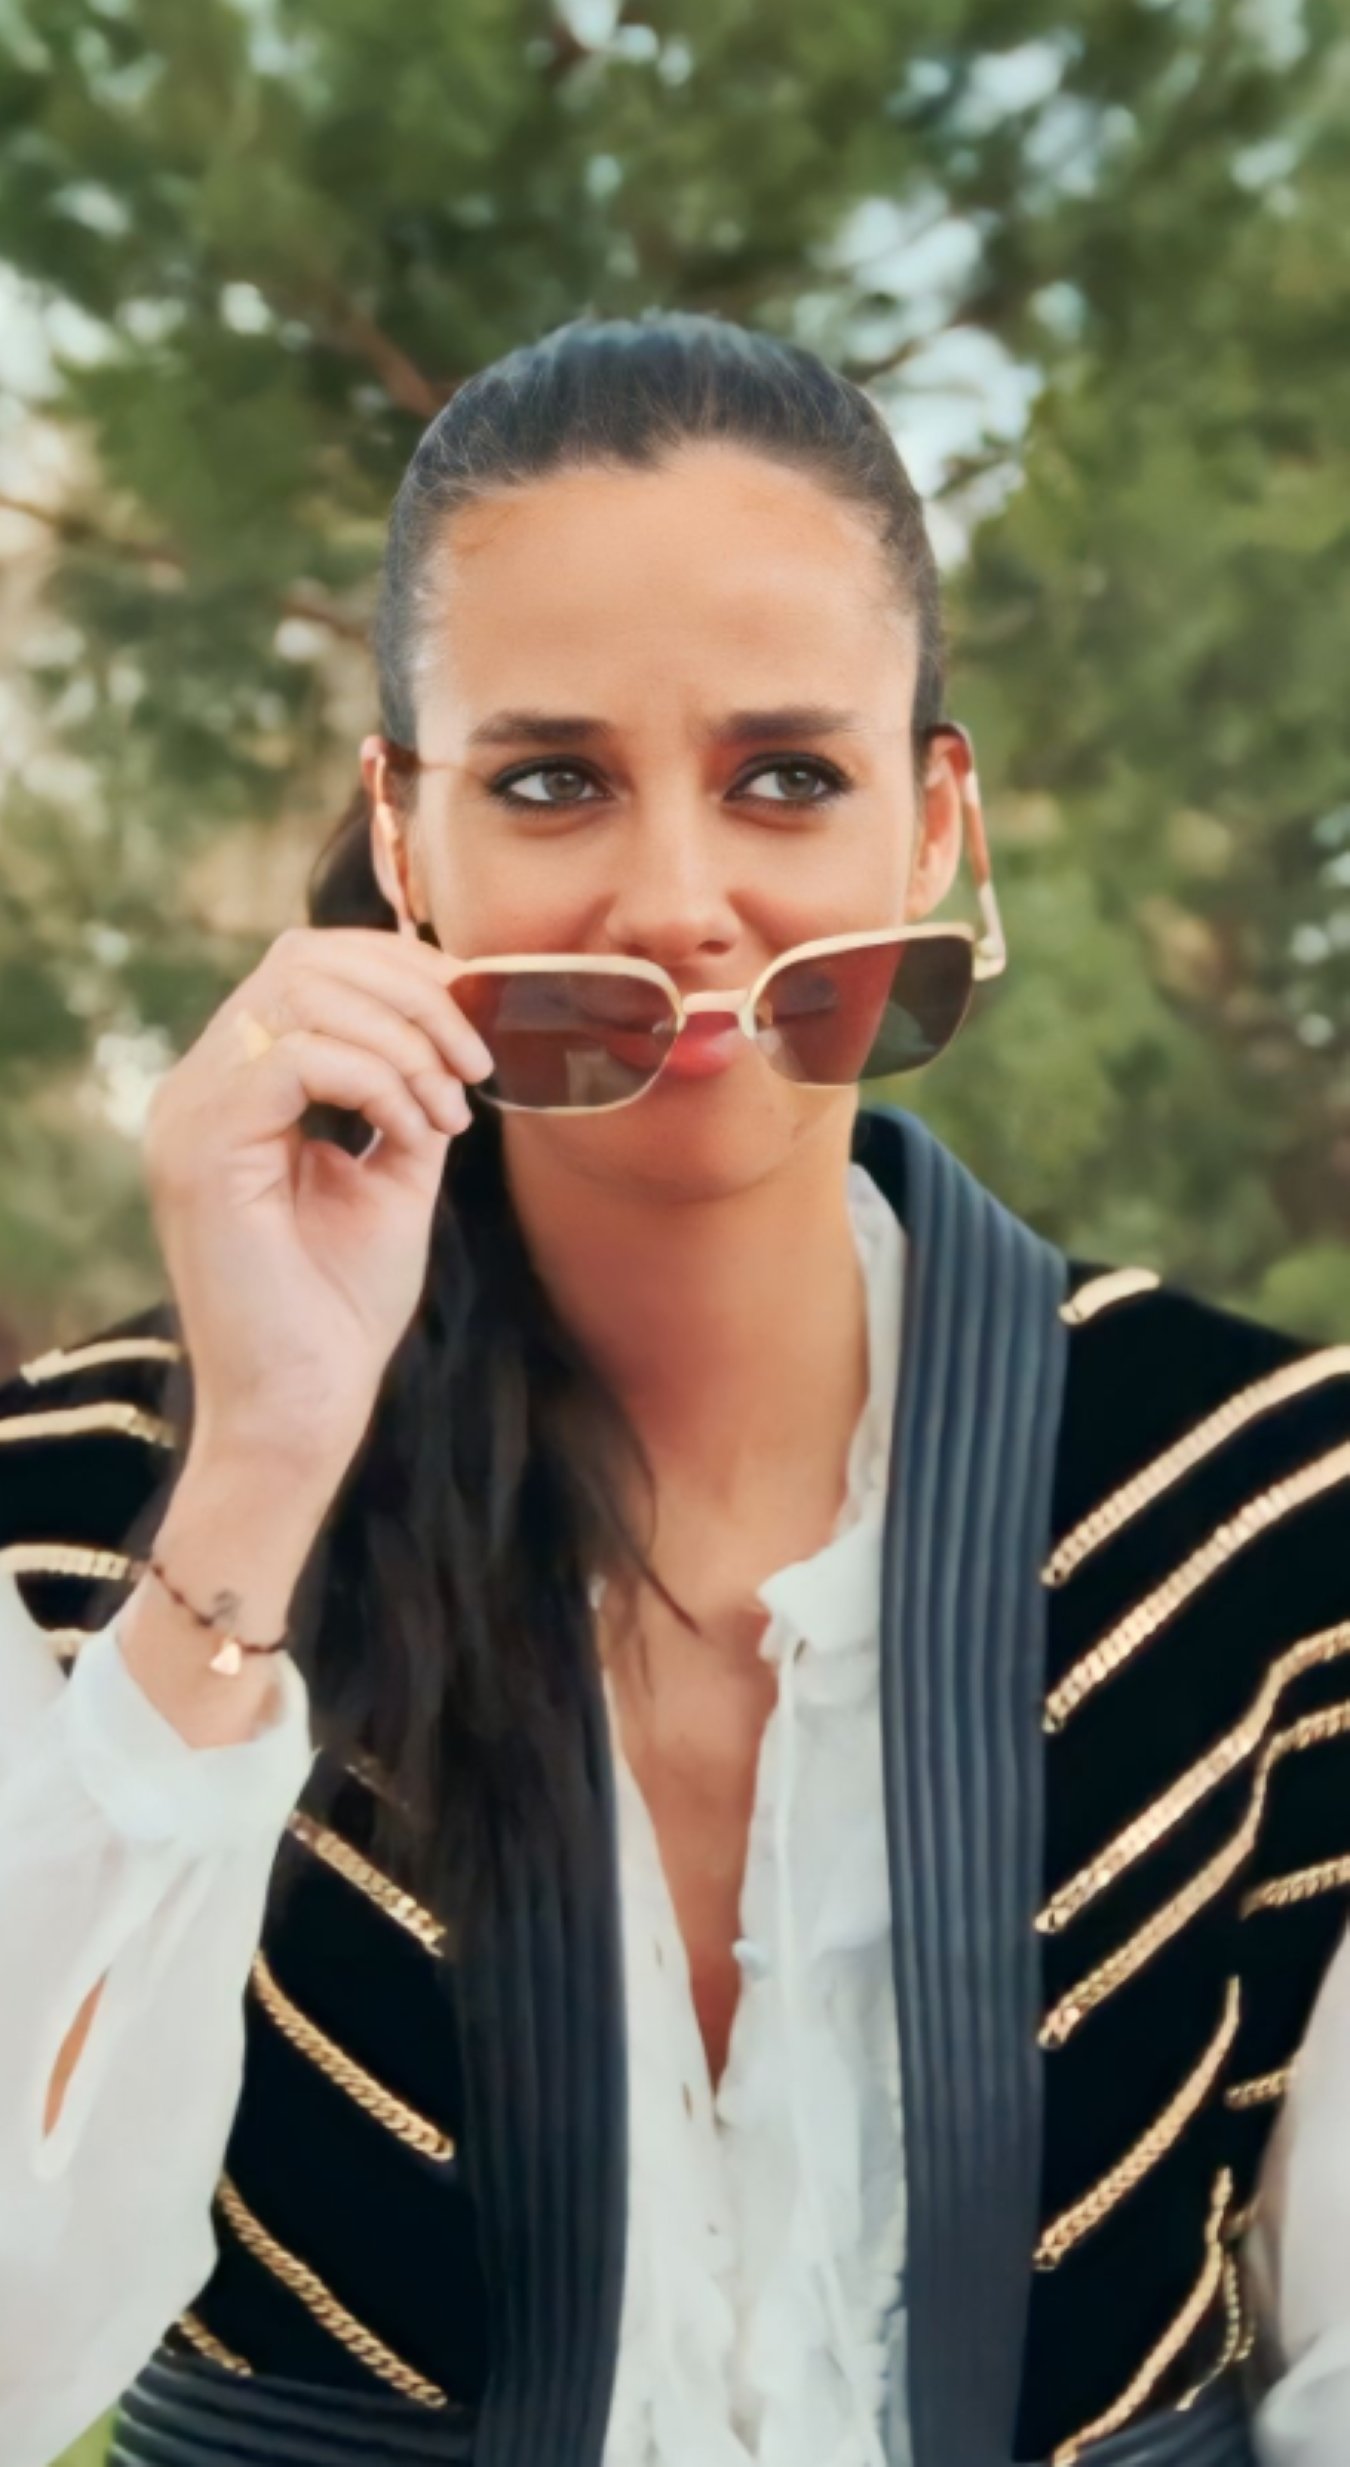 Victoria Federica estrena spot publicitario y hunde la marca,  vaya fichaje